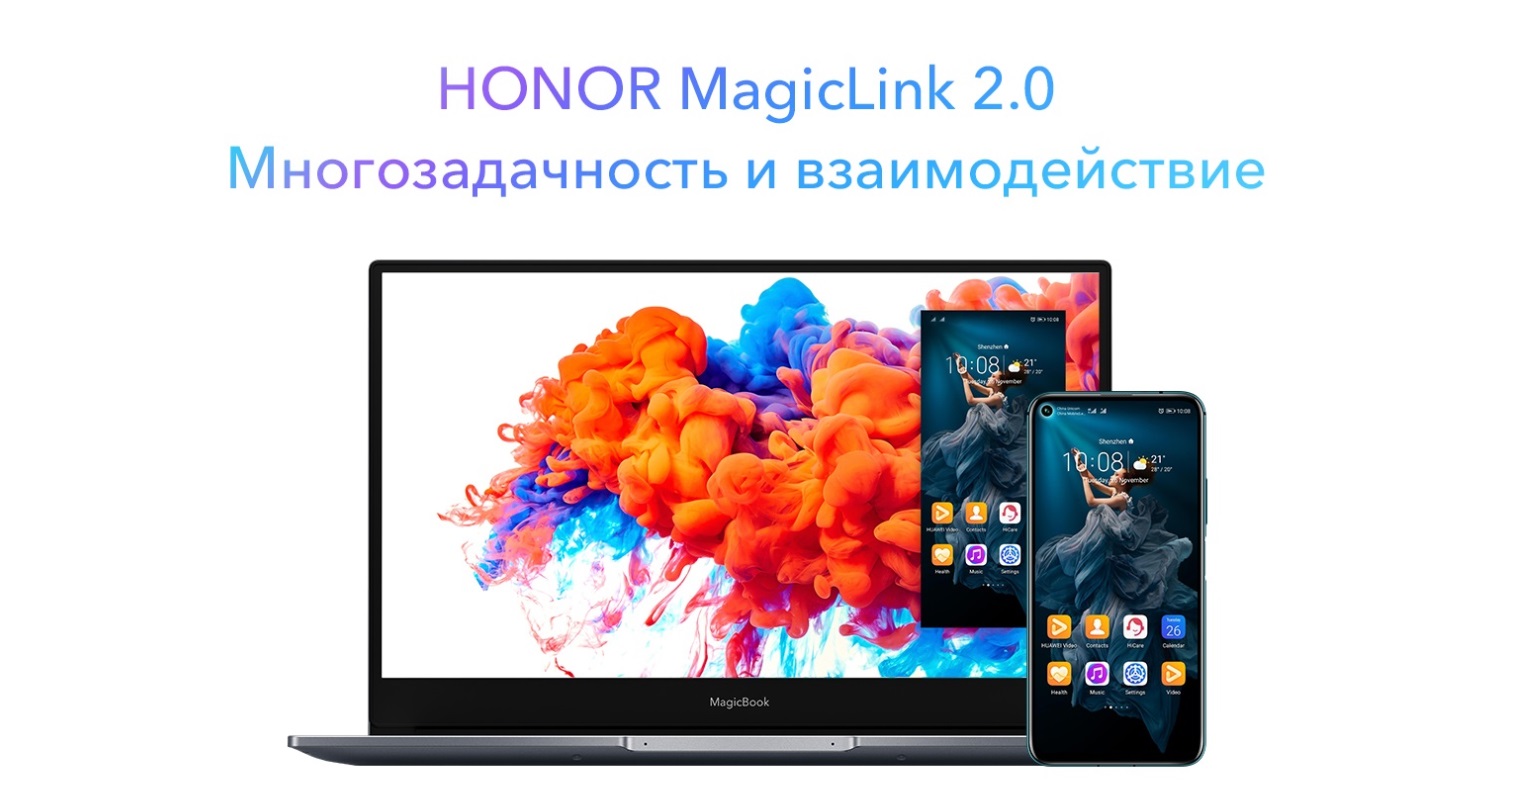 Honor Magic Link Ноутбук Купить